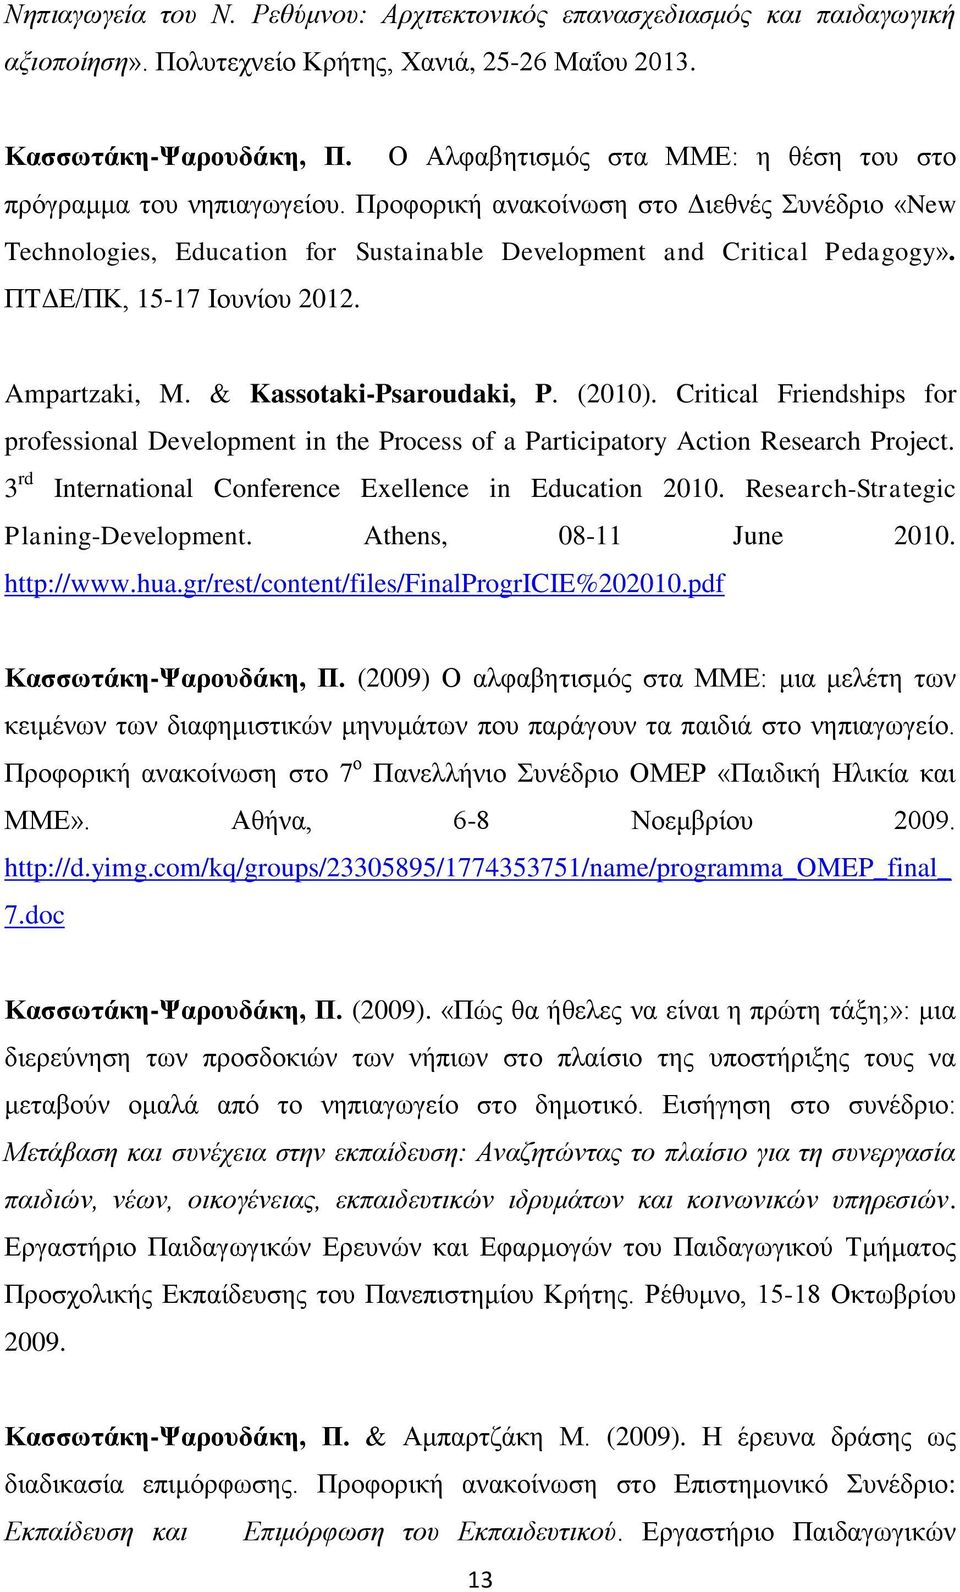 ΠΤΔΕ/ΠΚ, 15-17 Ιουνίου 2012. Ampartzaki, M. & Kassotaki-Psaroudaki, P. (2010). Critical Friendships for professional Development in the Process of a Participatory Action Research Project.